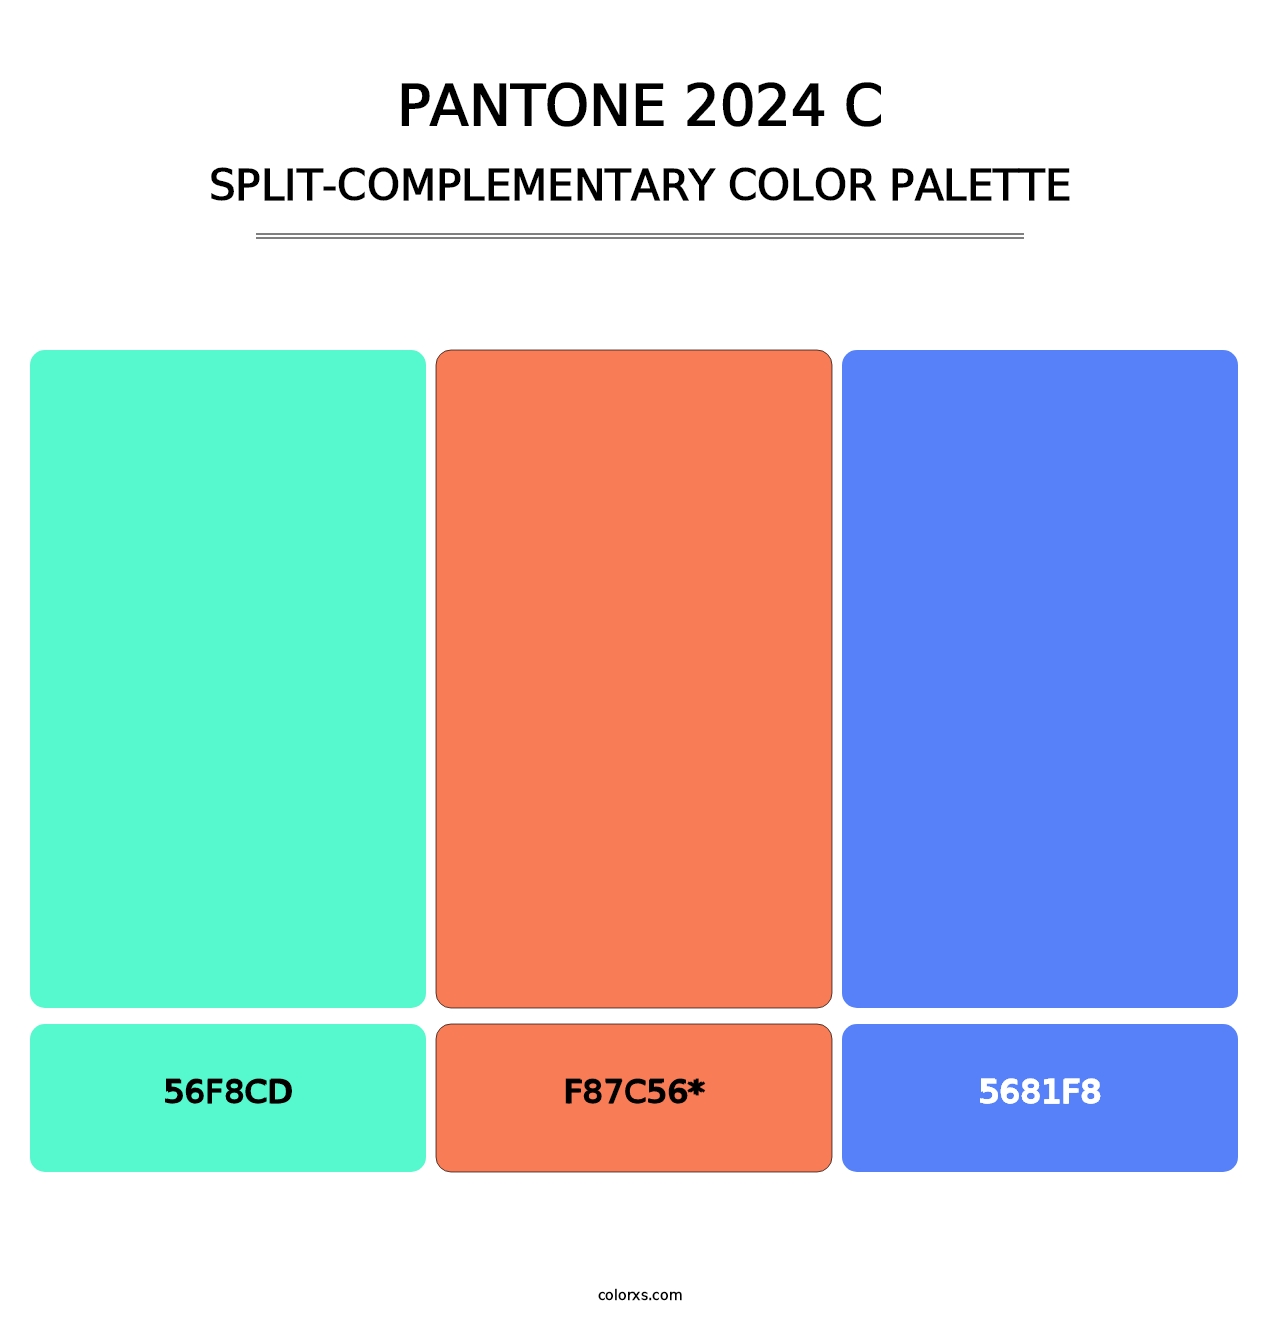 PANTONE 2024 C - Split-Complementary Color Palette